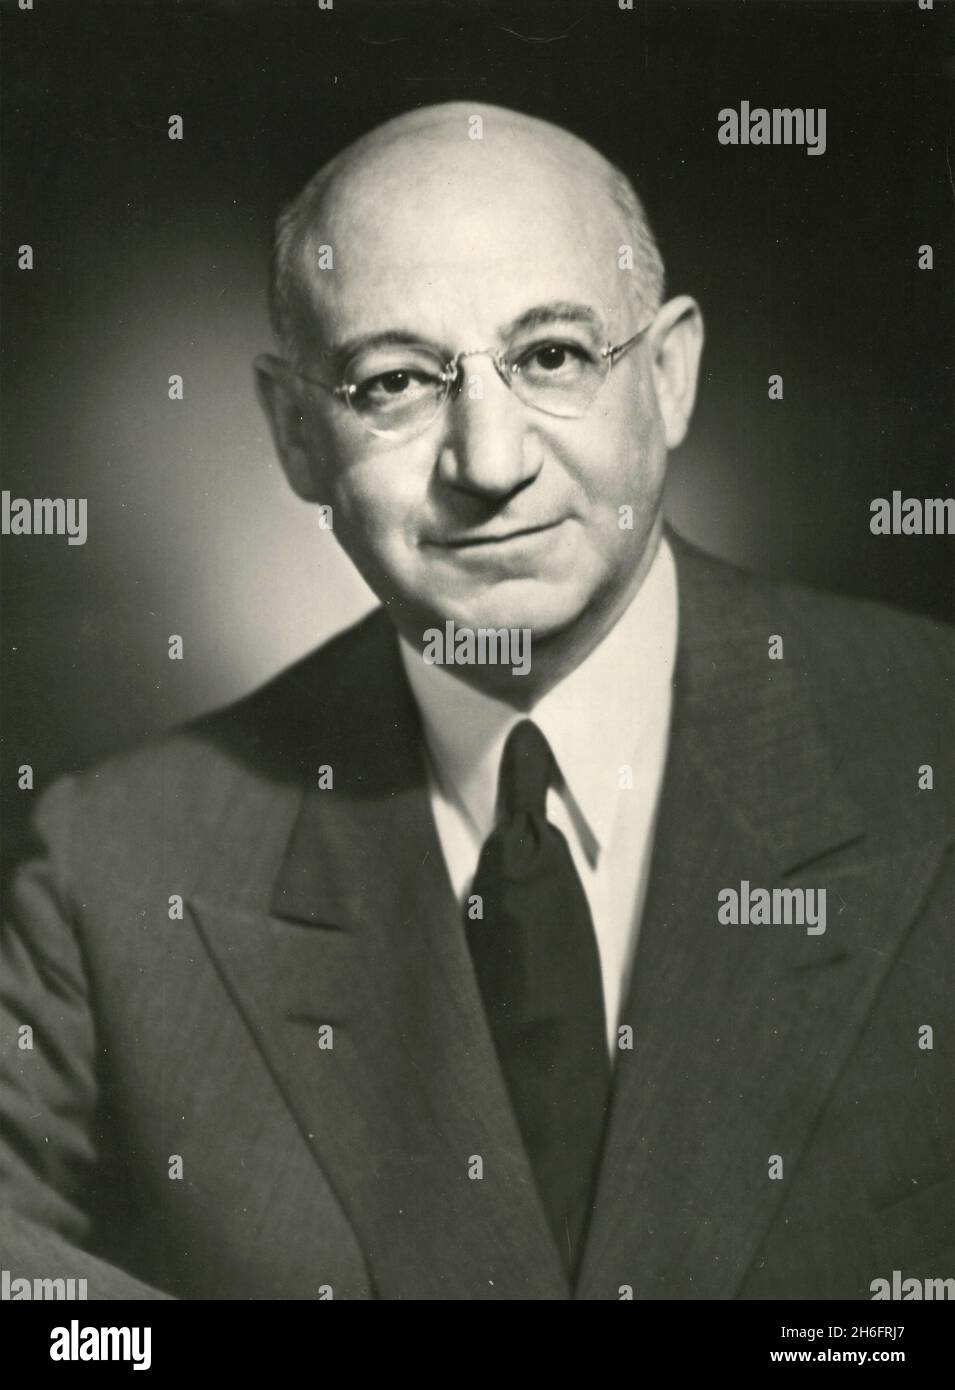 El empresario estadounidense Jacob Blaustein, Representante de los Estados Unidos en la Asamblea General de las Naciones Unidas de 10th, EE.UU. 1955 Foto de stock